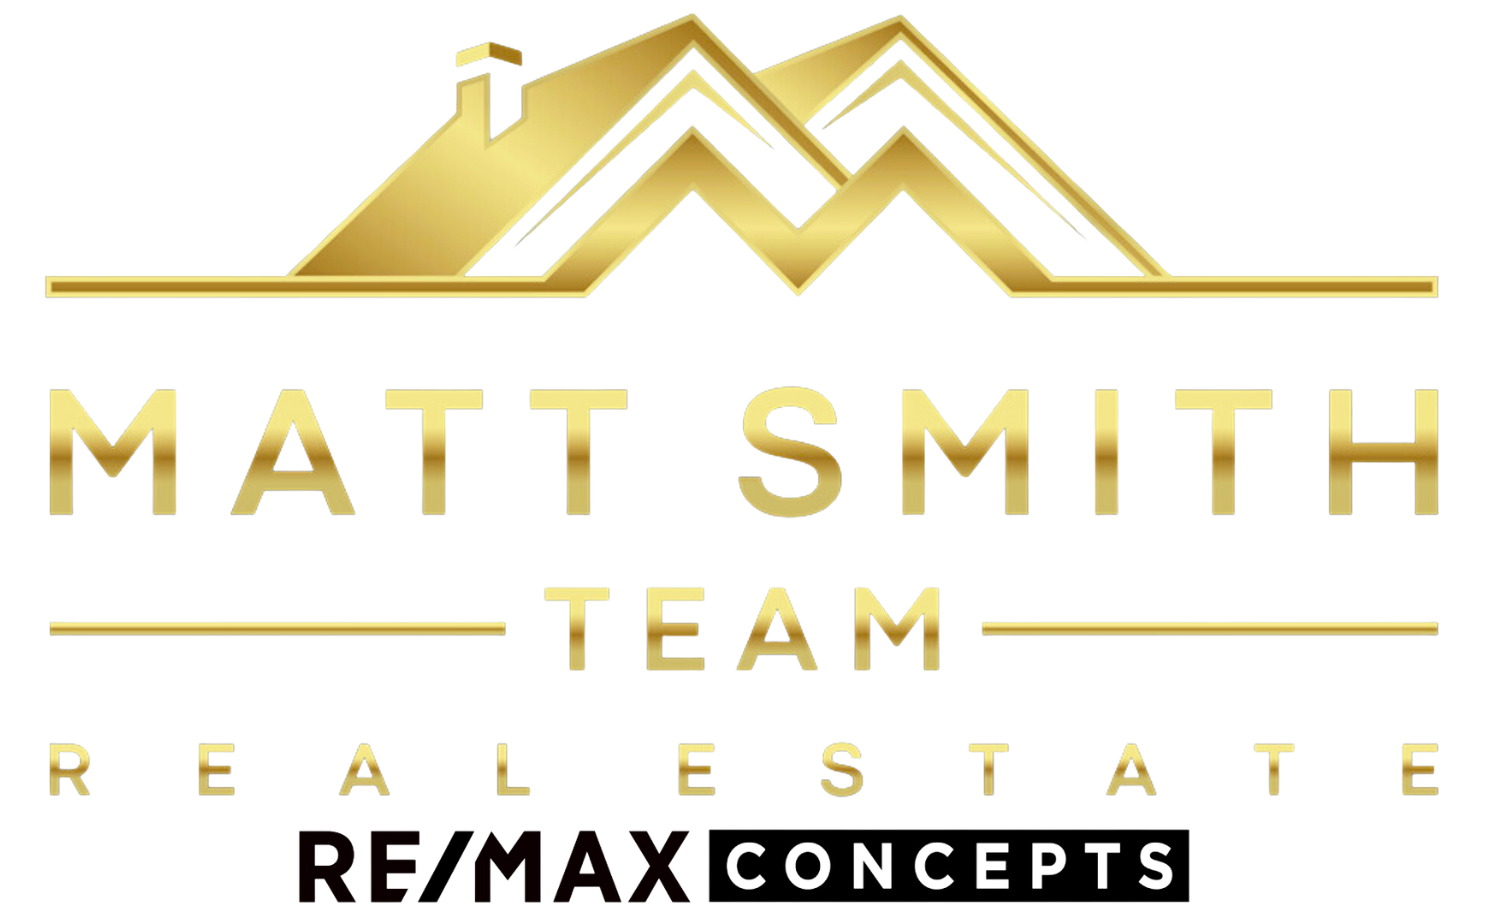 The Matt Smith Team